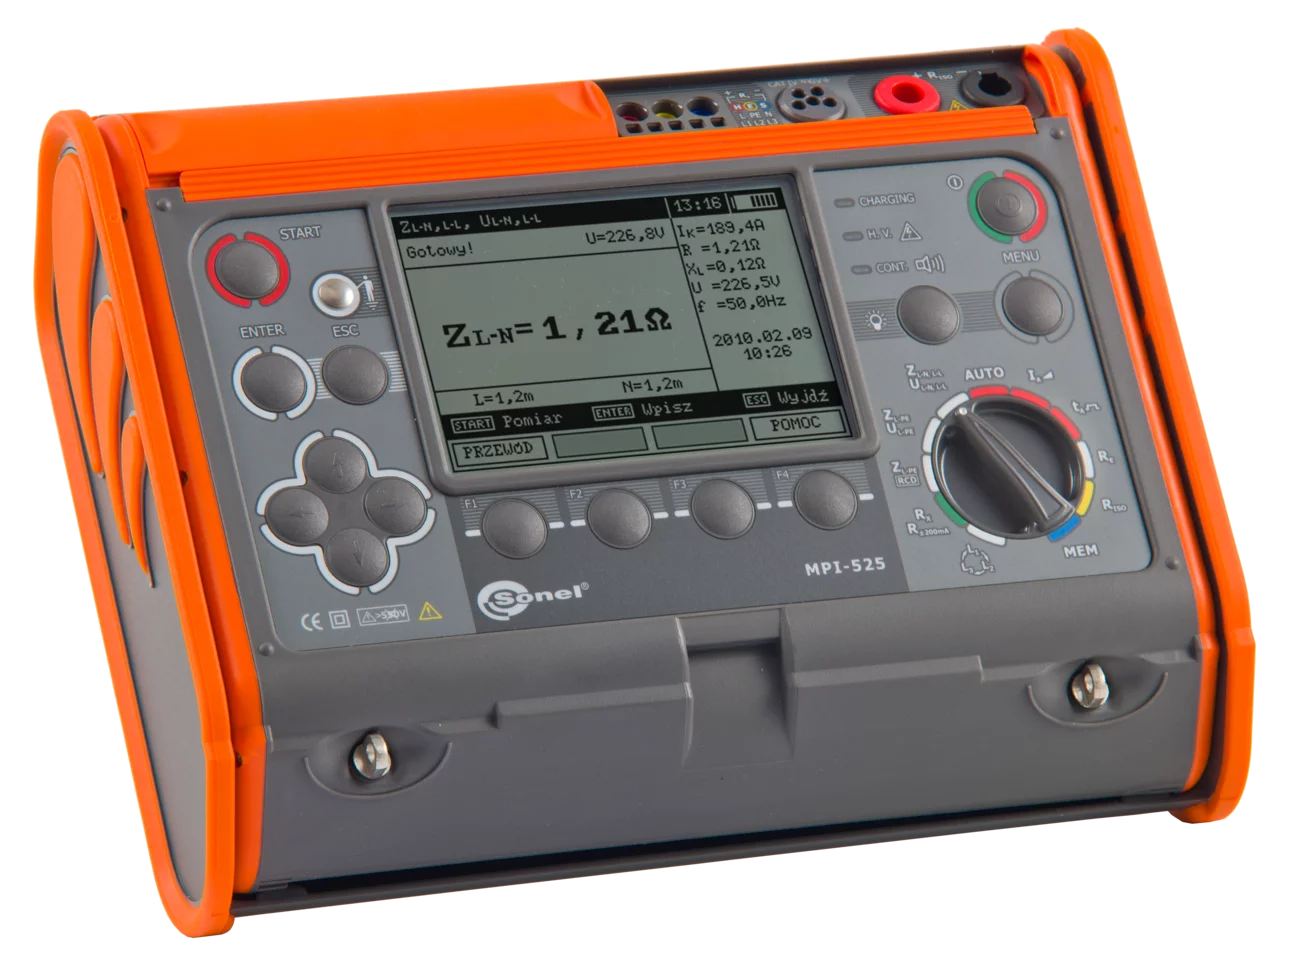 Multi-misuratore dei parametri delle installazioni elettriche MPI-525